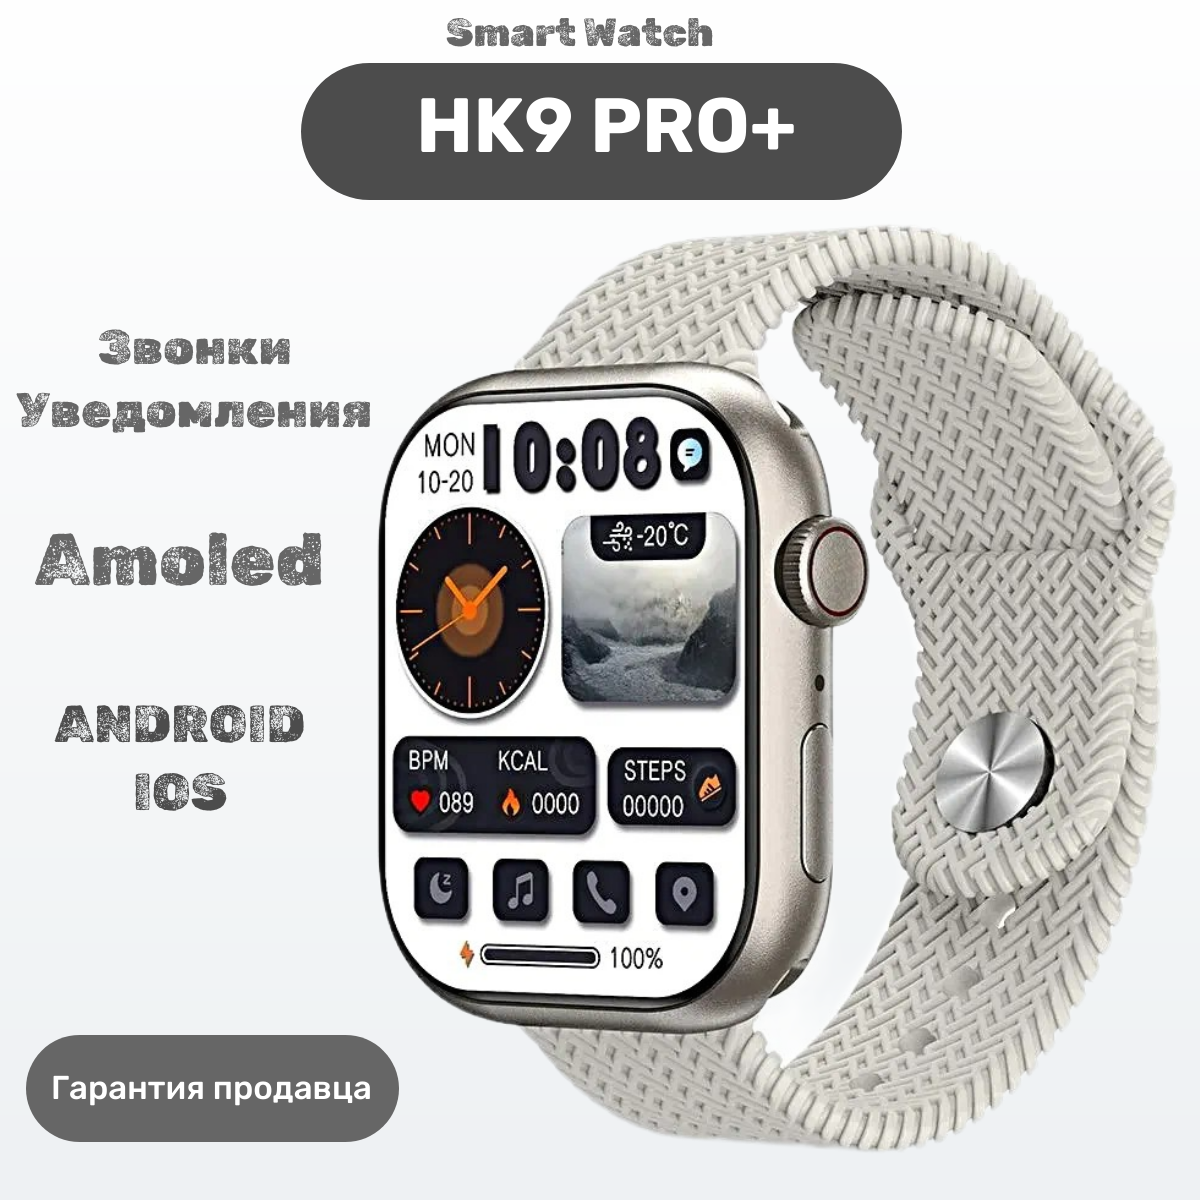 Умные часы HK9PRO Plus Смарт часы HK9 Pro+, 47mm, iOS, Android, Bluetooth звонки, Уведомления, Шагомер, Серебро